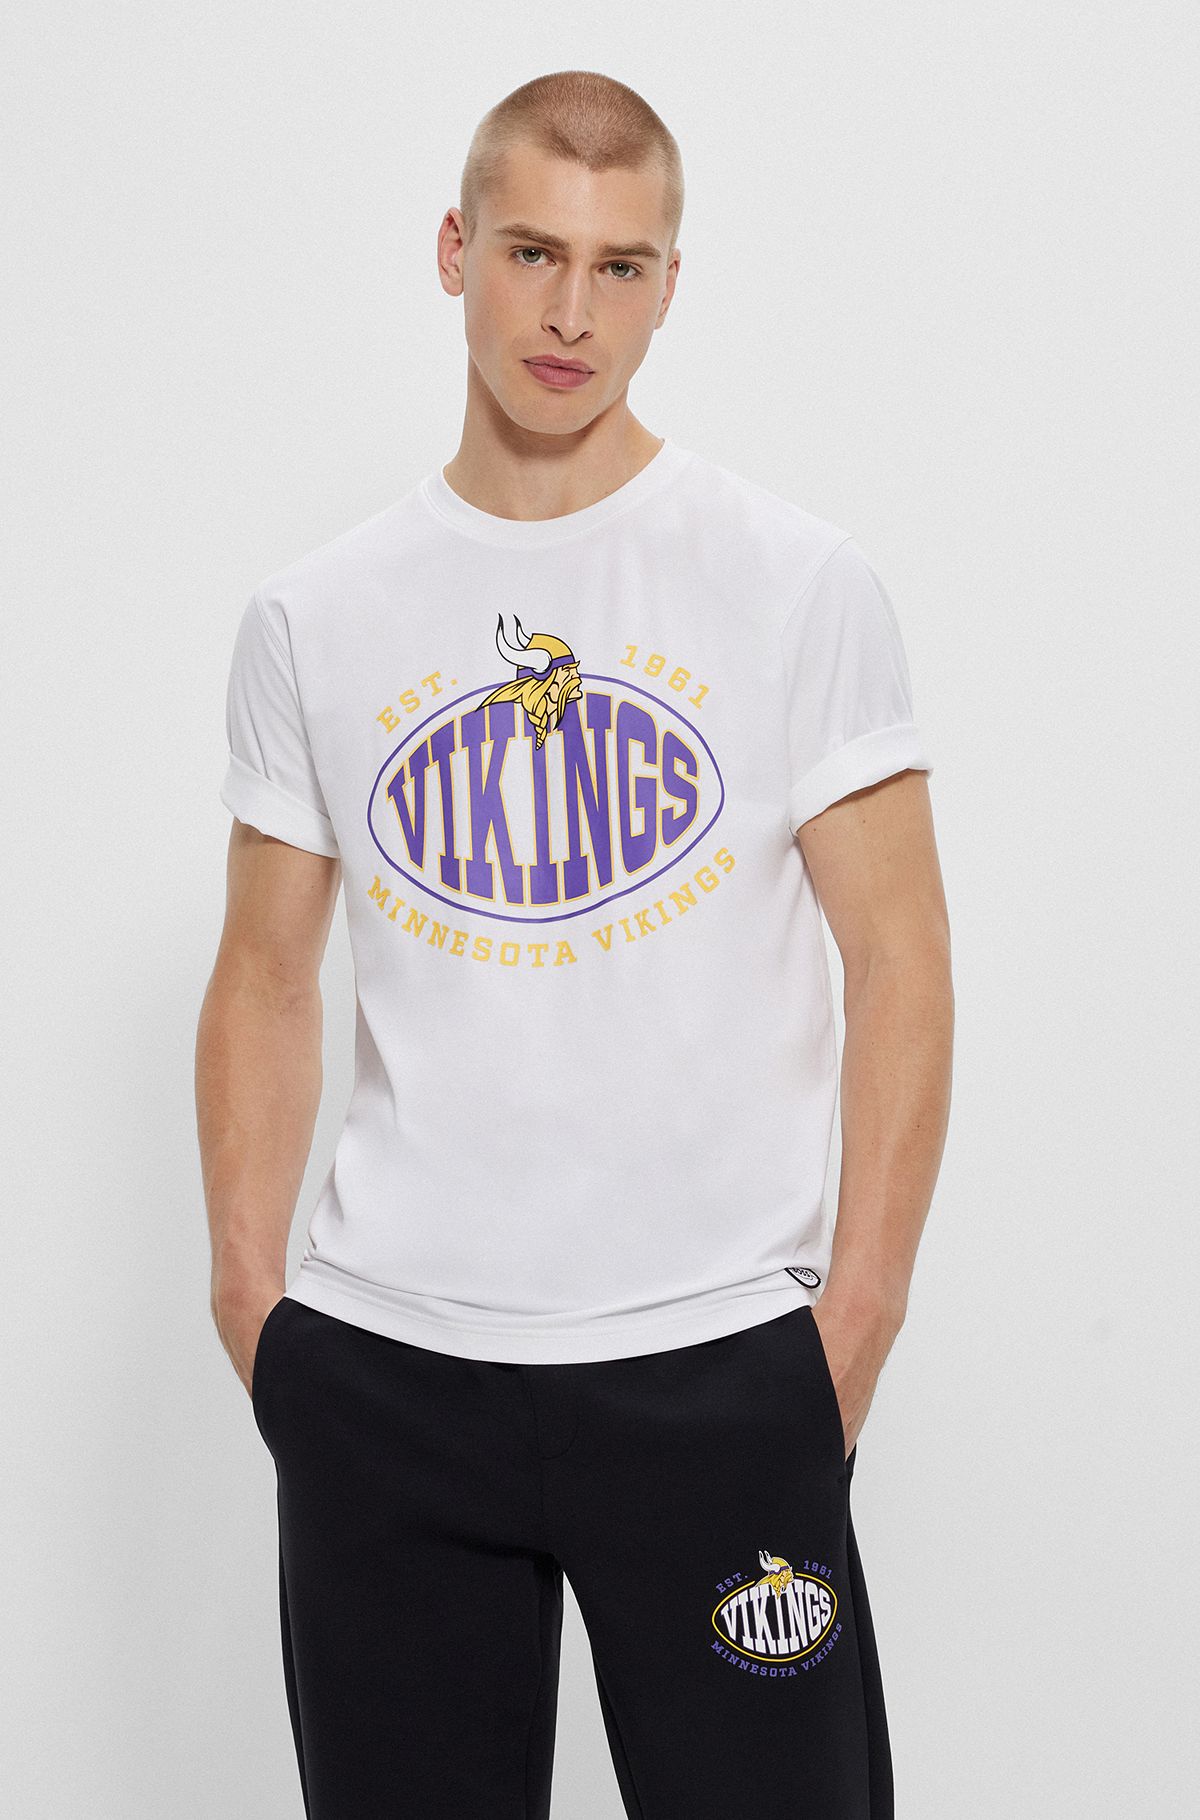  Camiseta de algodón elástico BOSS x NFL con detalle de la colaboración, Vikings